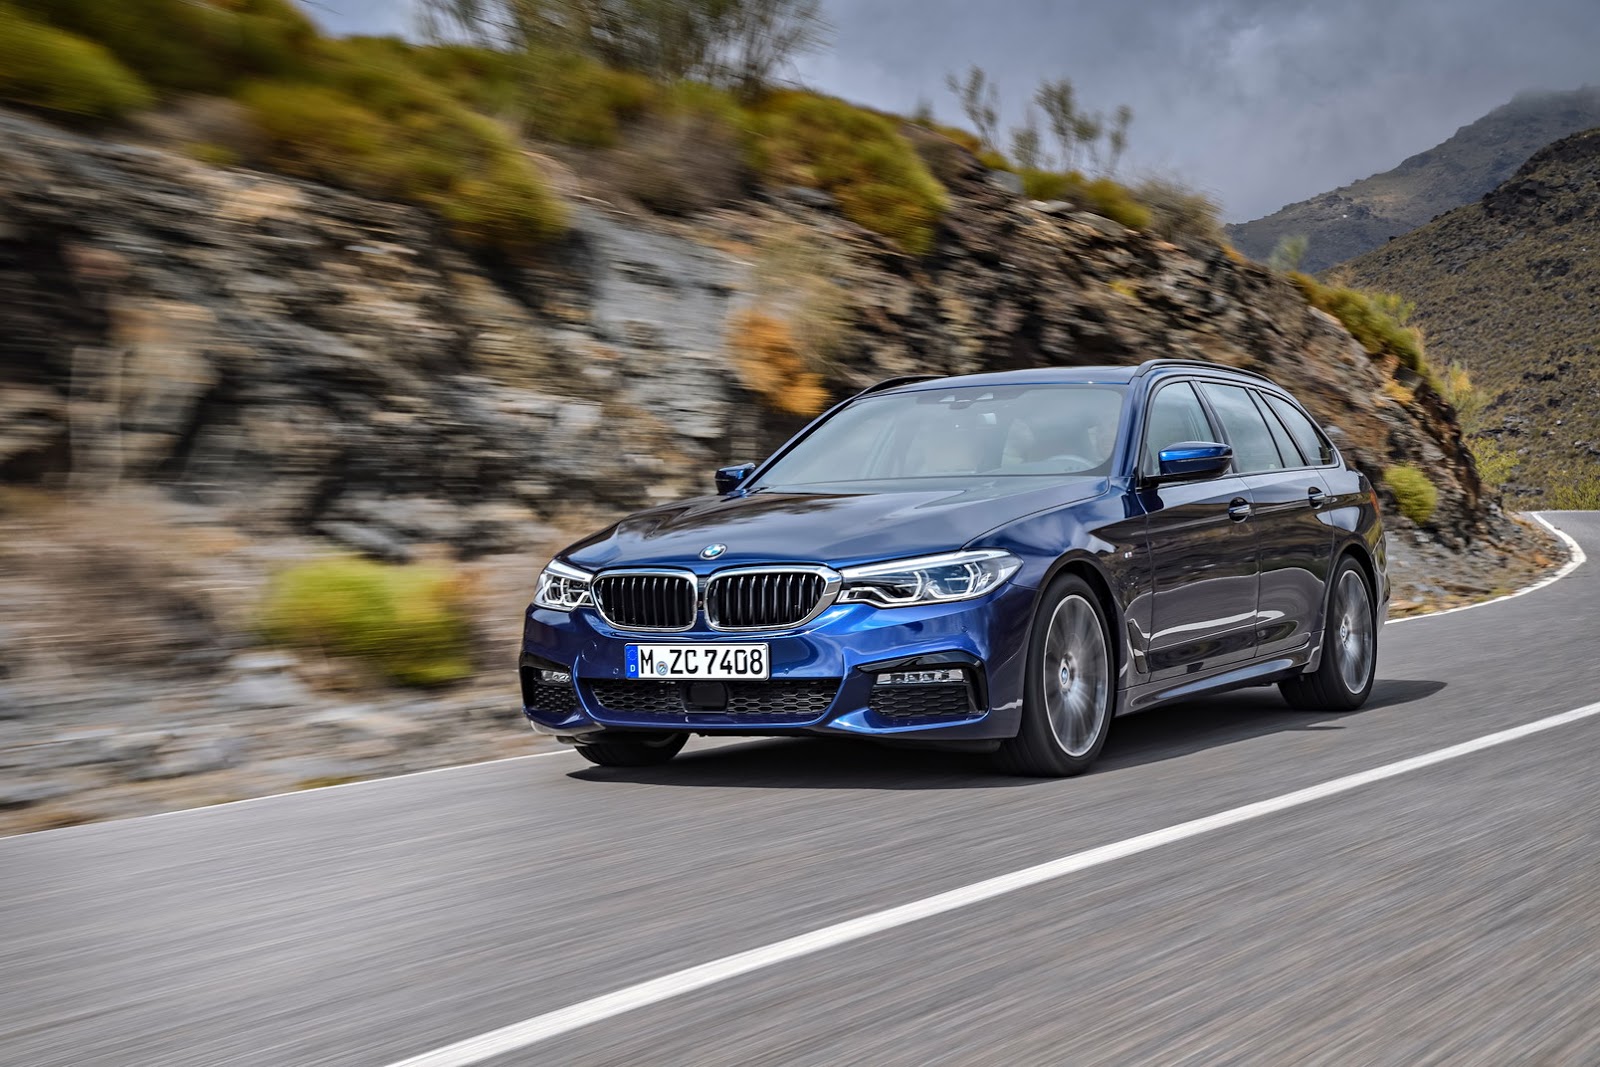 Cùng với i8 phiên bản mới, BMW cũng cho ra mắt toàn cầu chiếc Series-5 Touring hoàn toàn mới